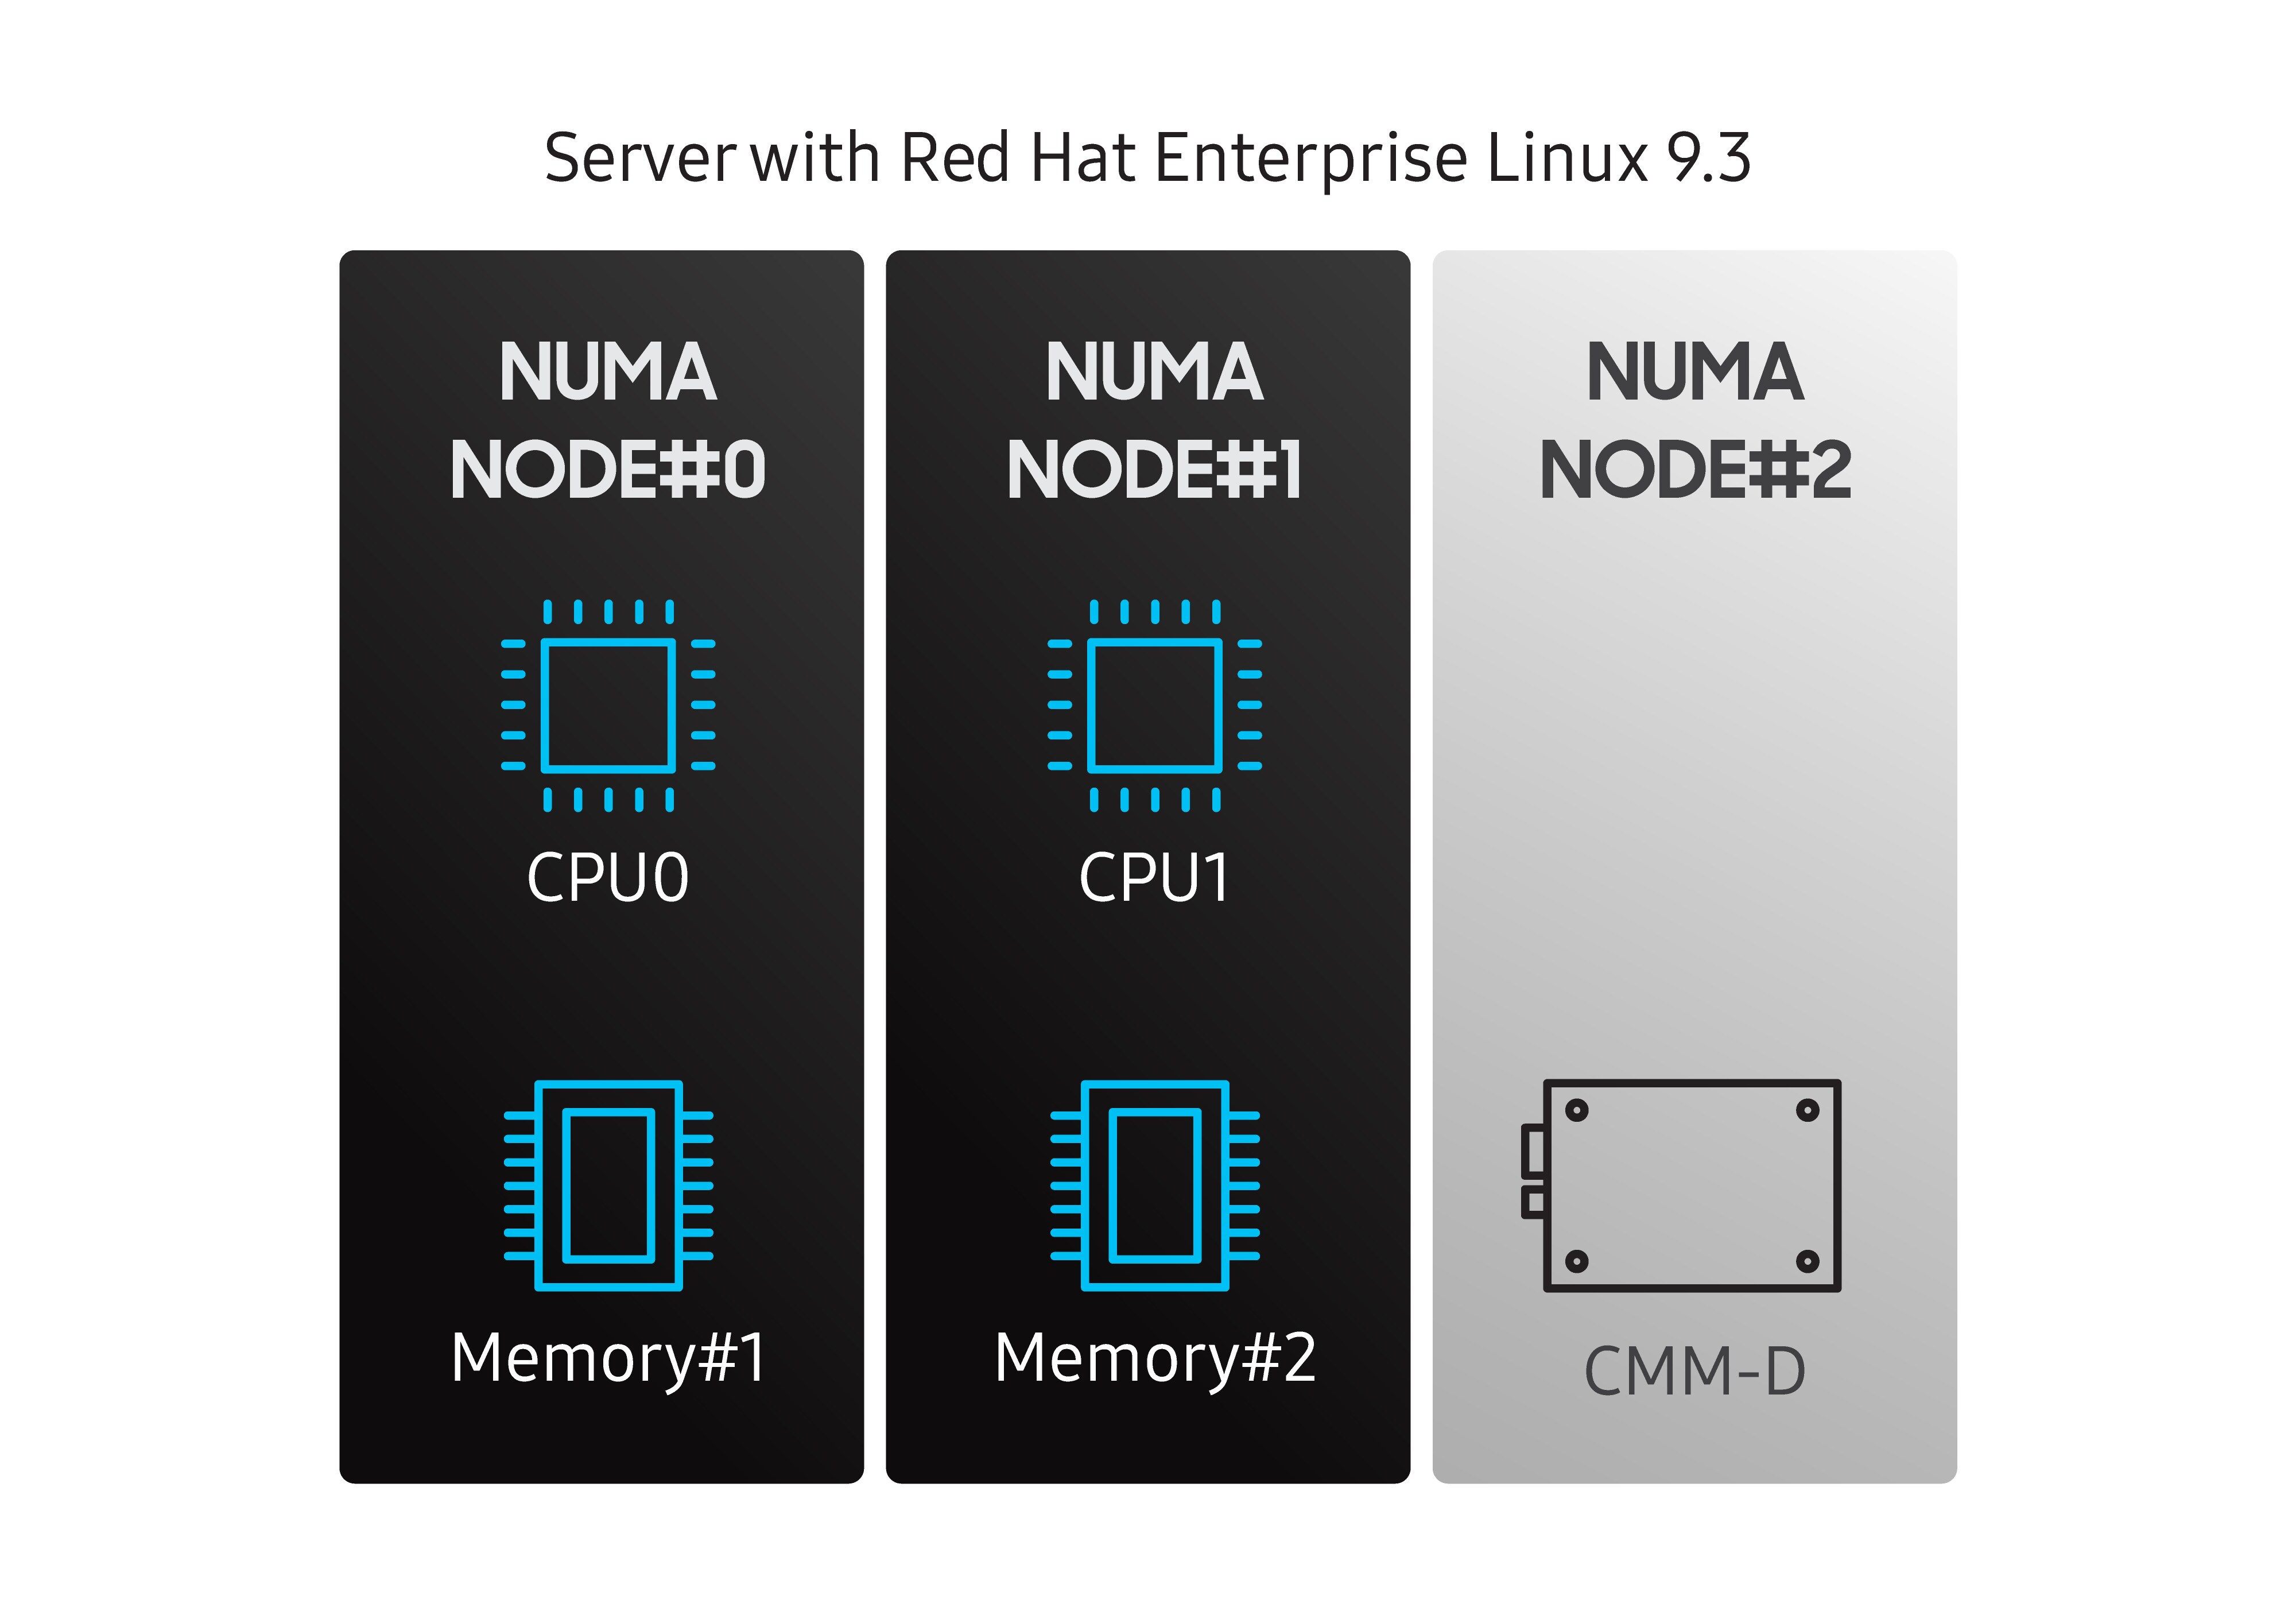 CPU가 없는 NUMA node의 CMM-D